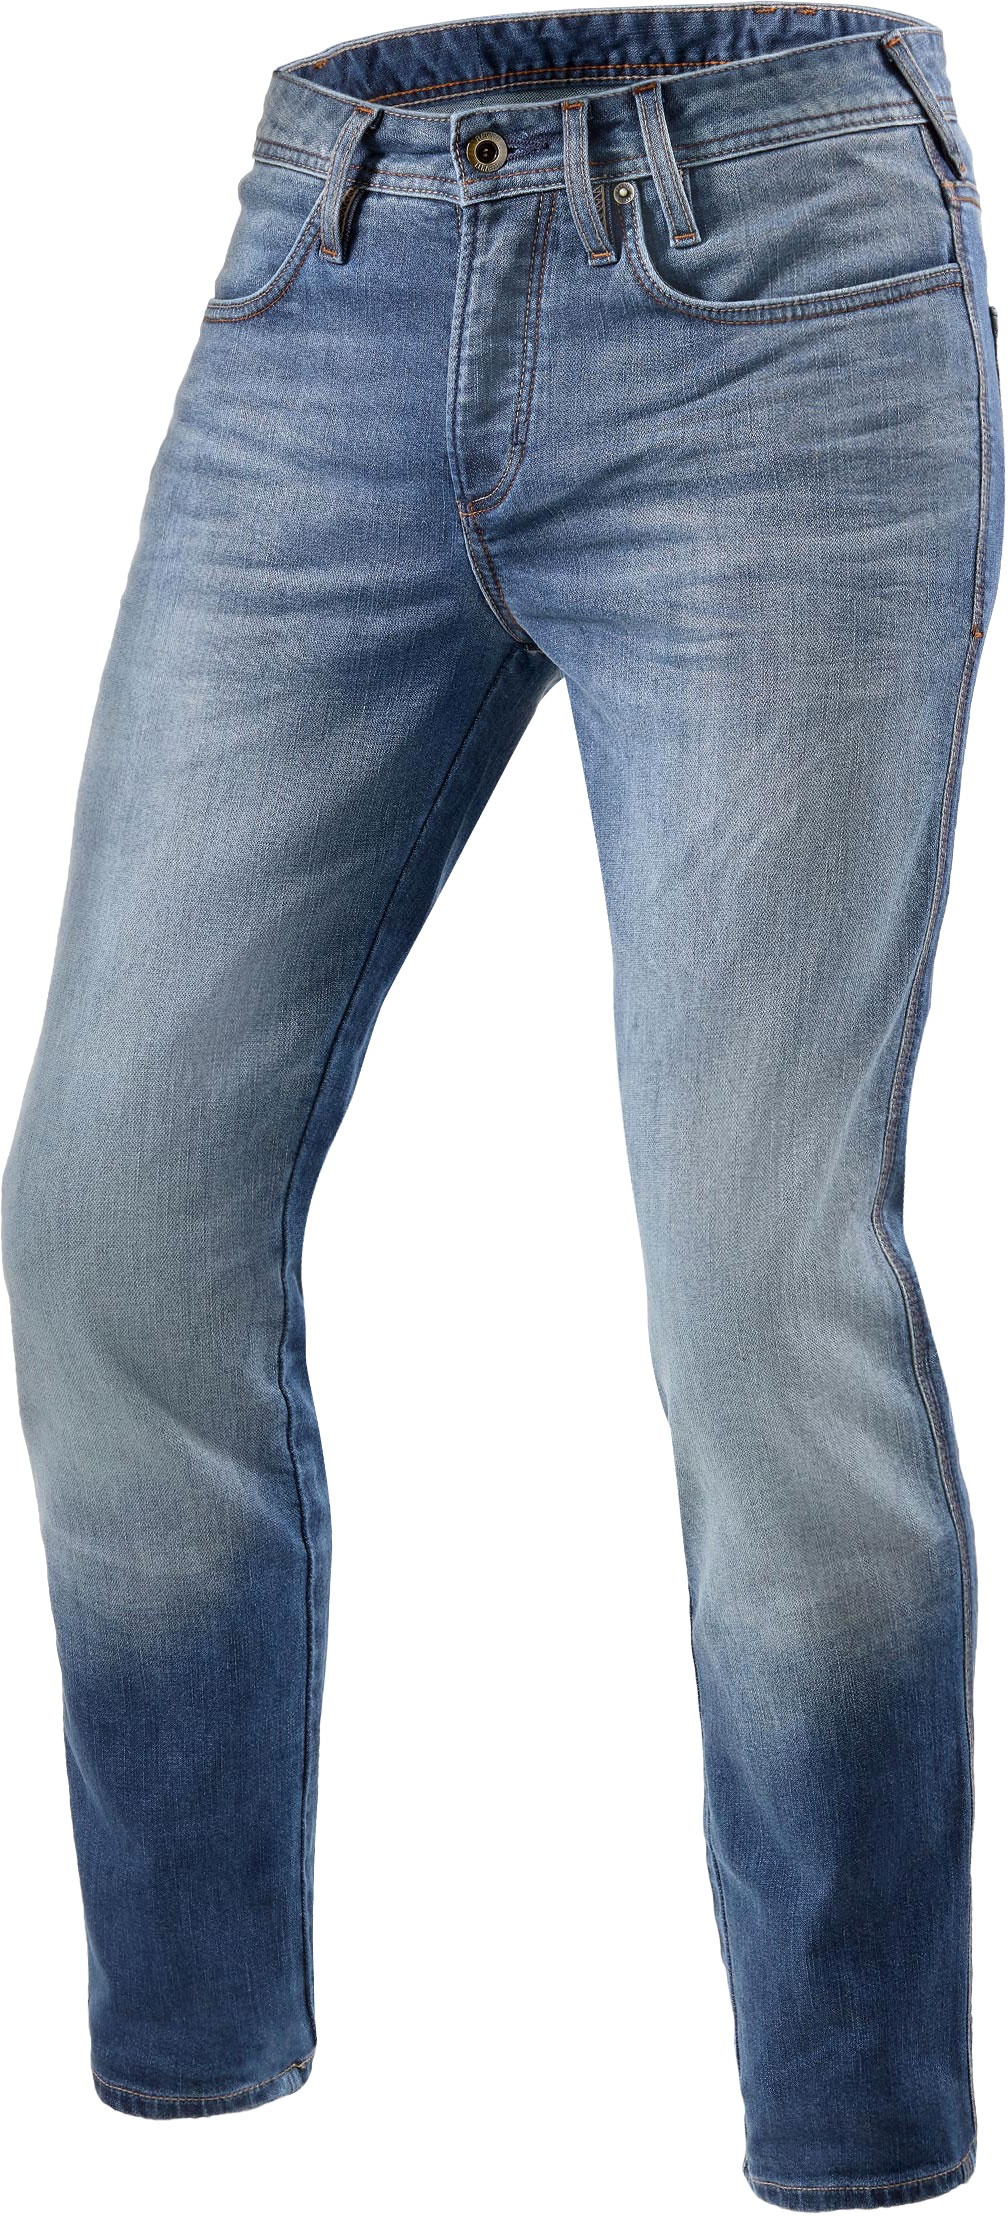 Revit Piston 2, jeans - Bleu - W31/L32